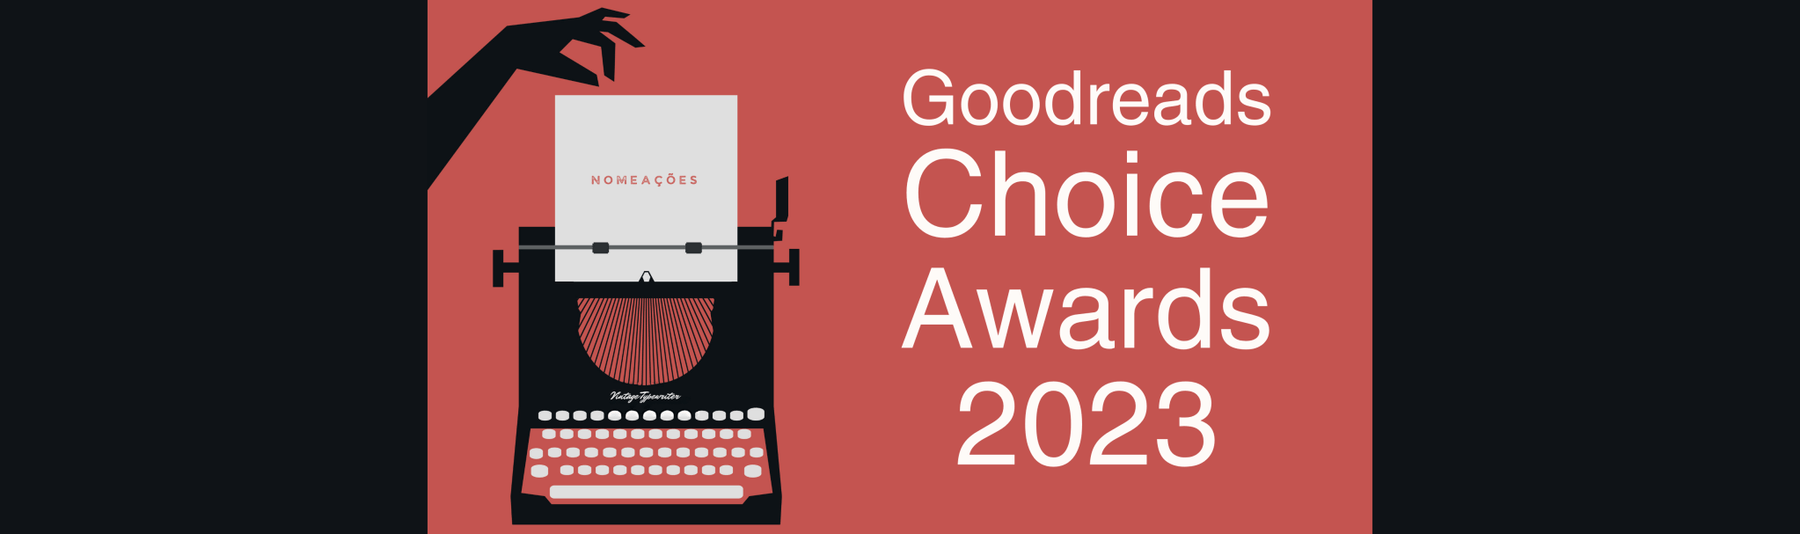 Goodreads Choice Awards 2023: O SEGREDO DA CRIADA é um dos livros nomeados. - Alma dos Livros